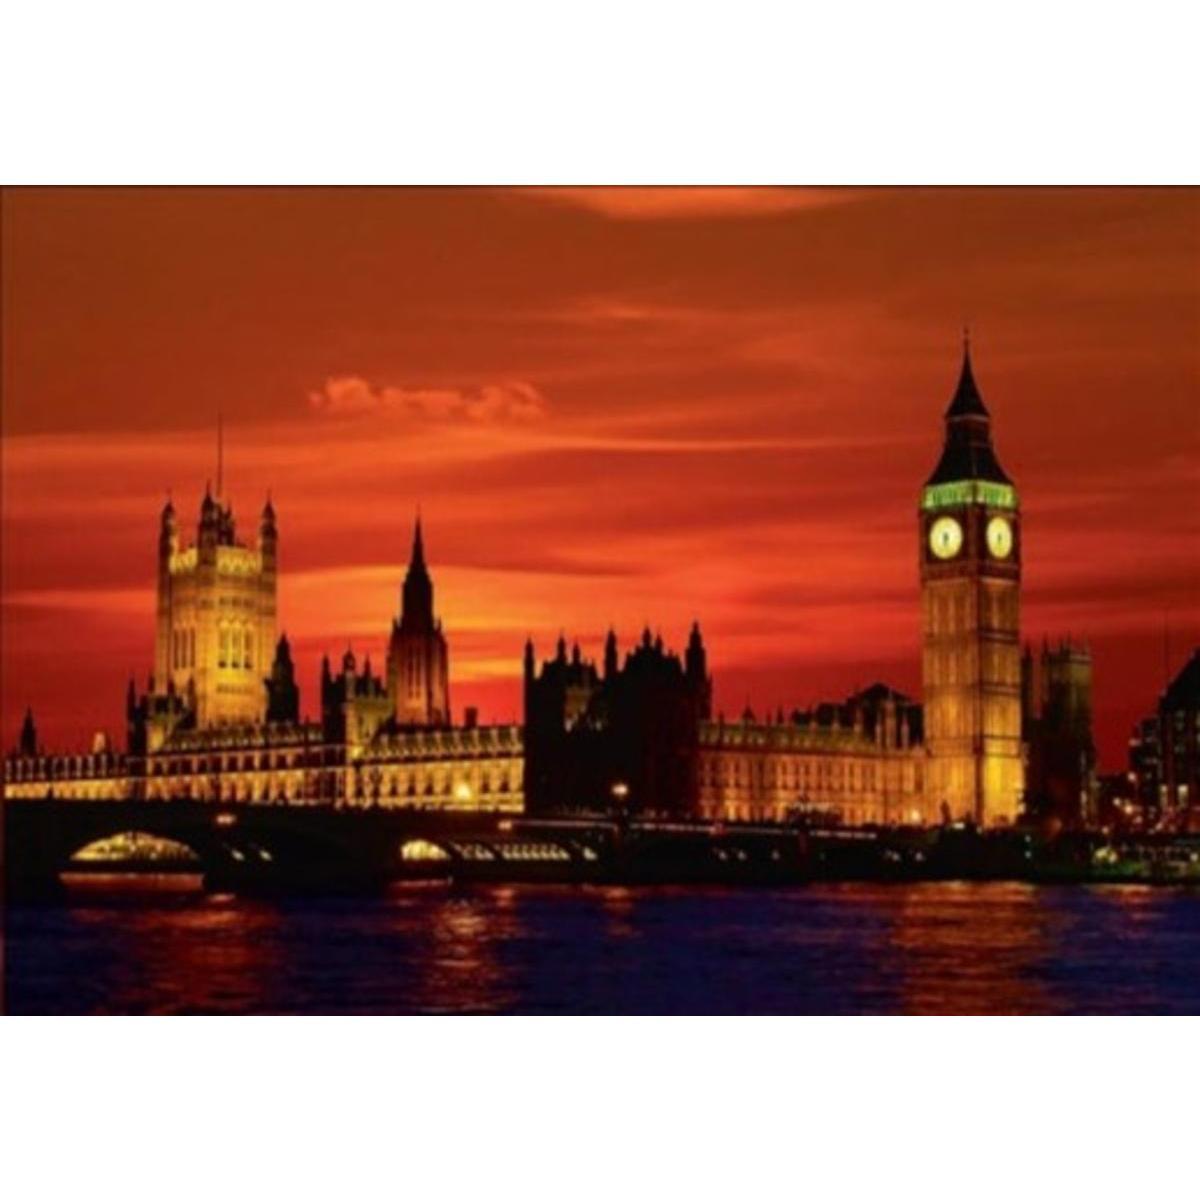 Image contrecollée Le Londres rouge - 70 x 100 cm